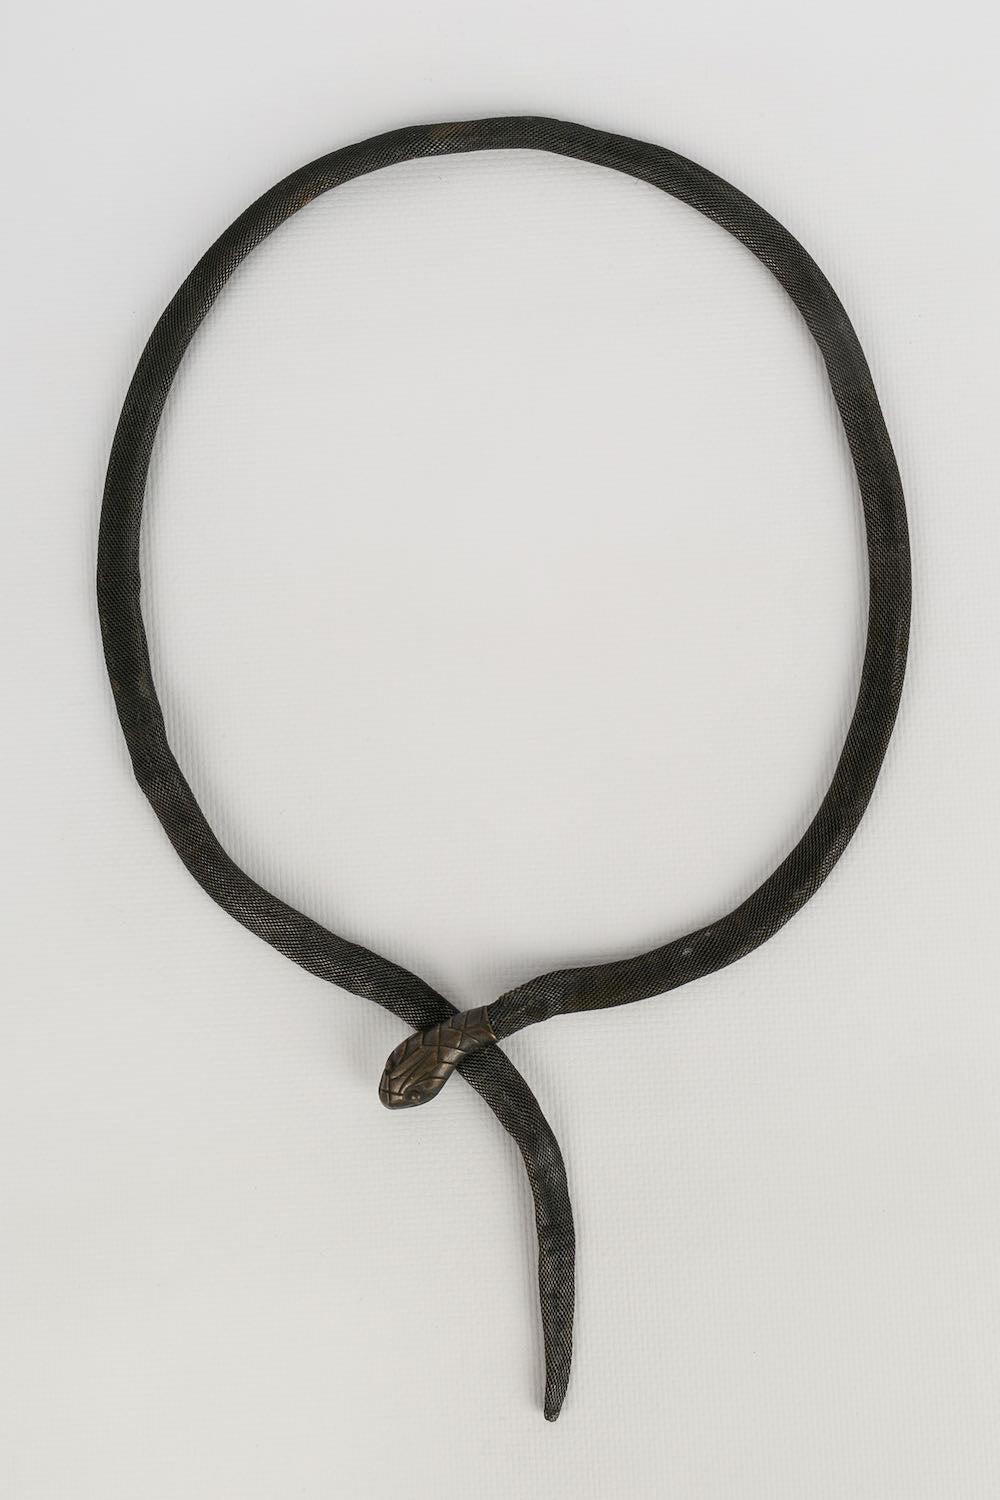 Cinturón de metal plateado oscuro que representa una serpiente.

Más información:
Estado: Buen estado
Dimensiones: Longitud : 83 cm
Periodo: Siglo XX

Referencia del vendedor: ACC77